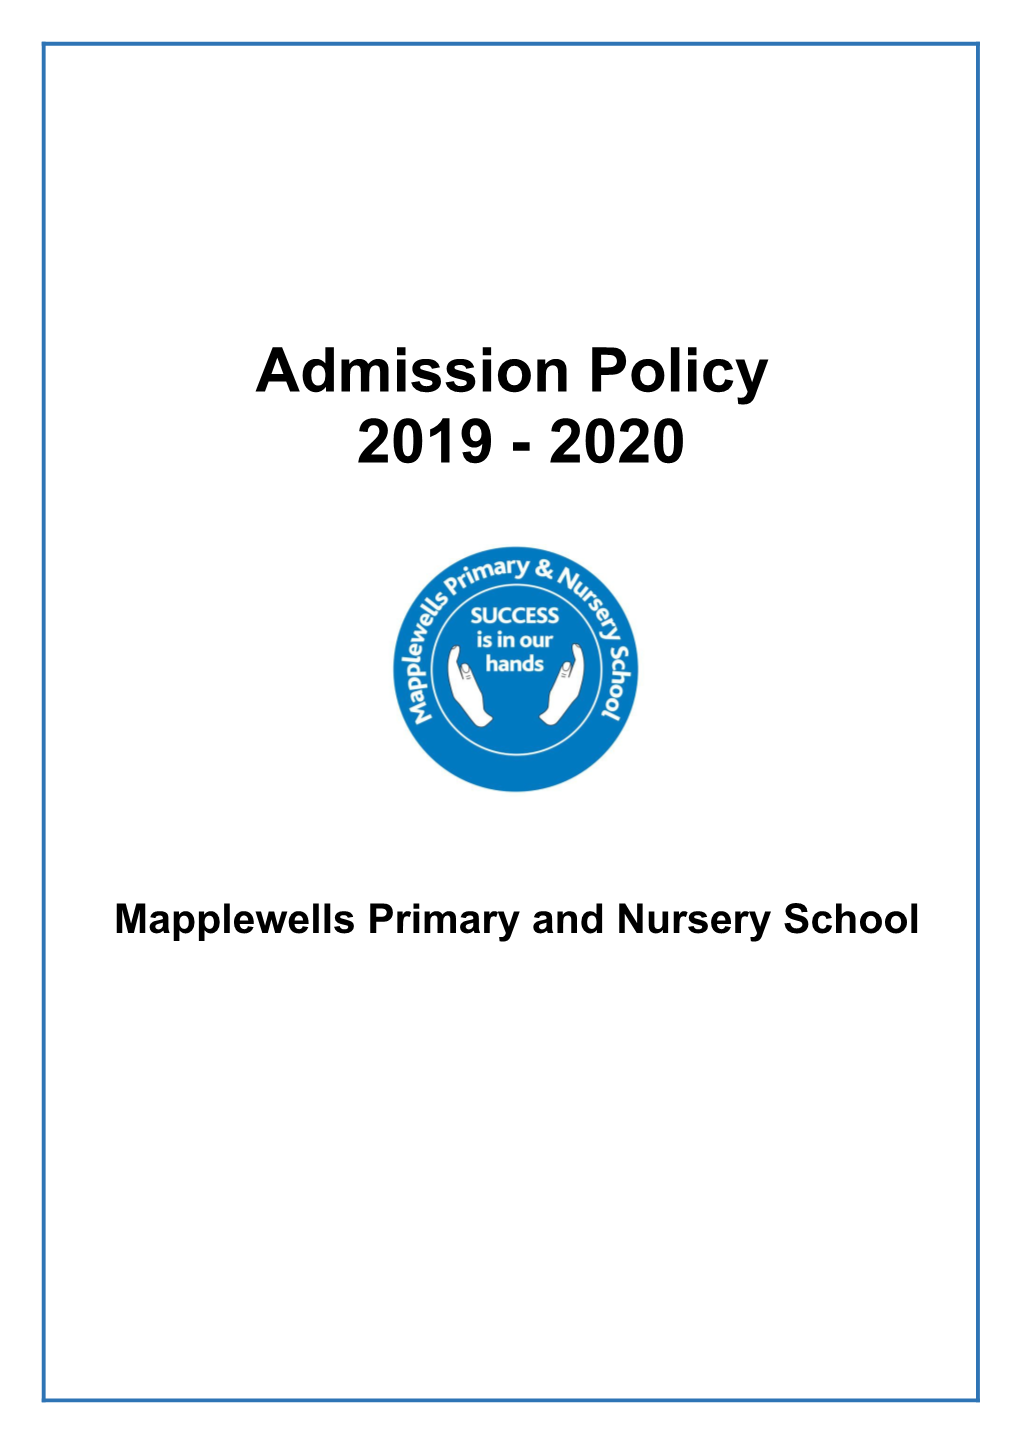 Mapplewells Primary and Nursery School